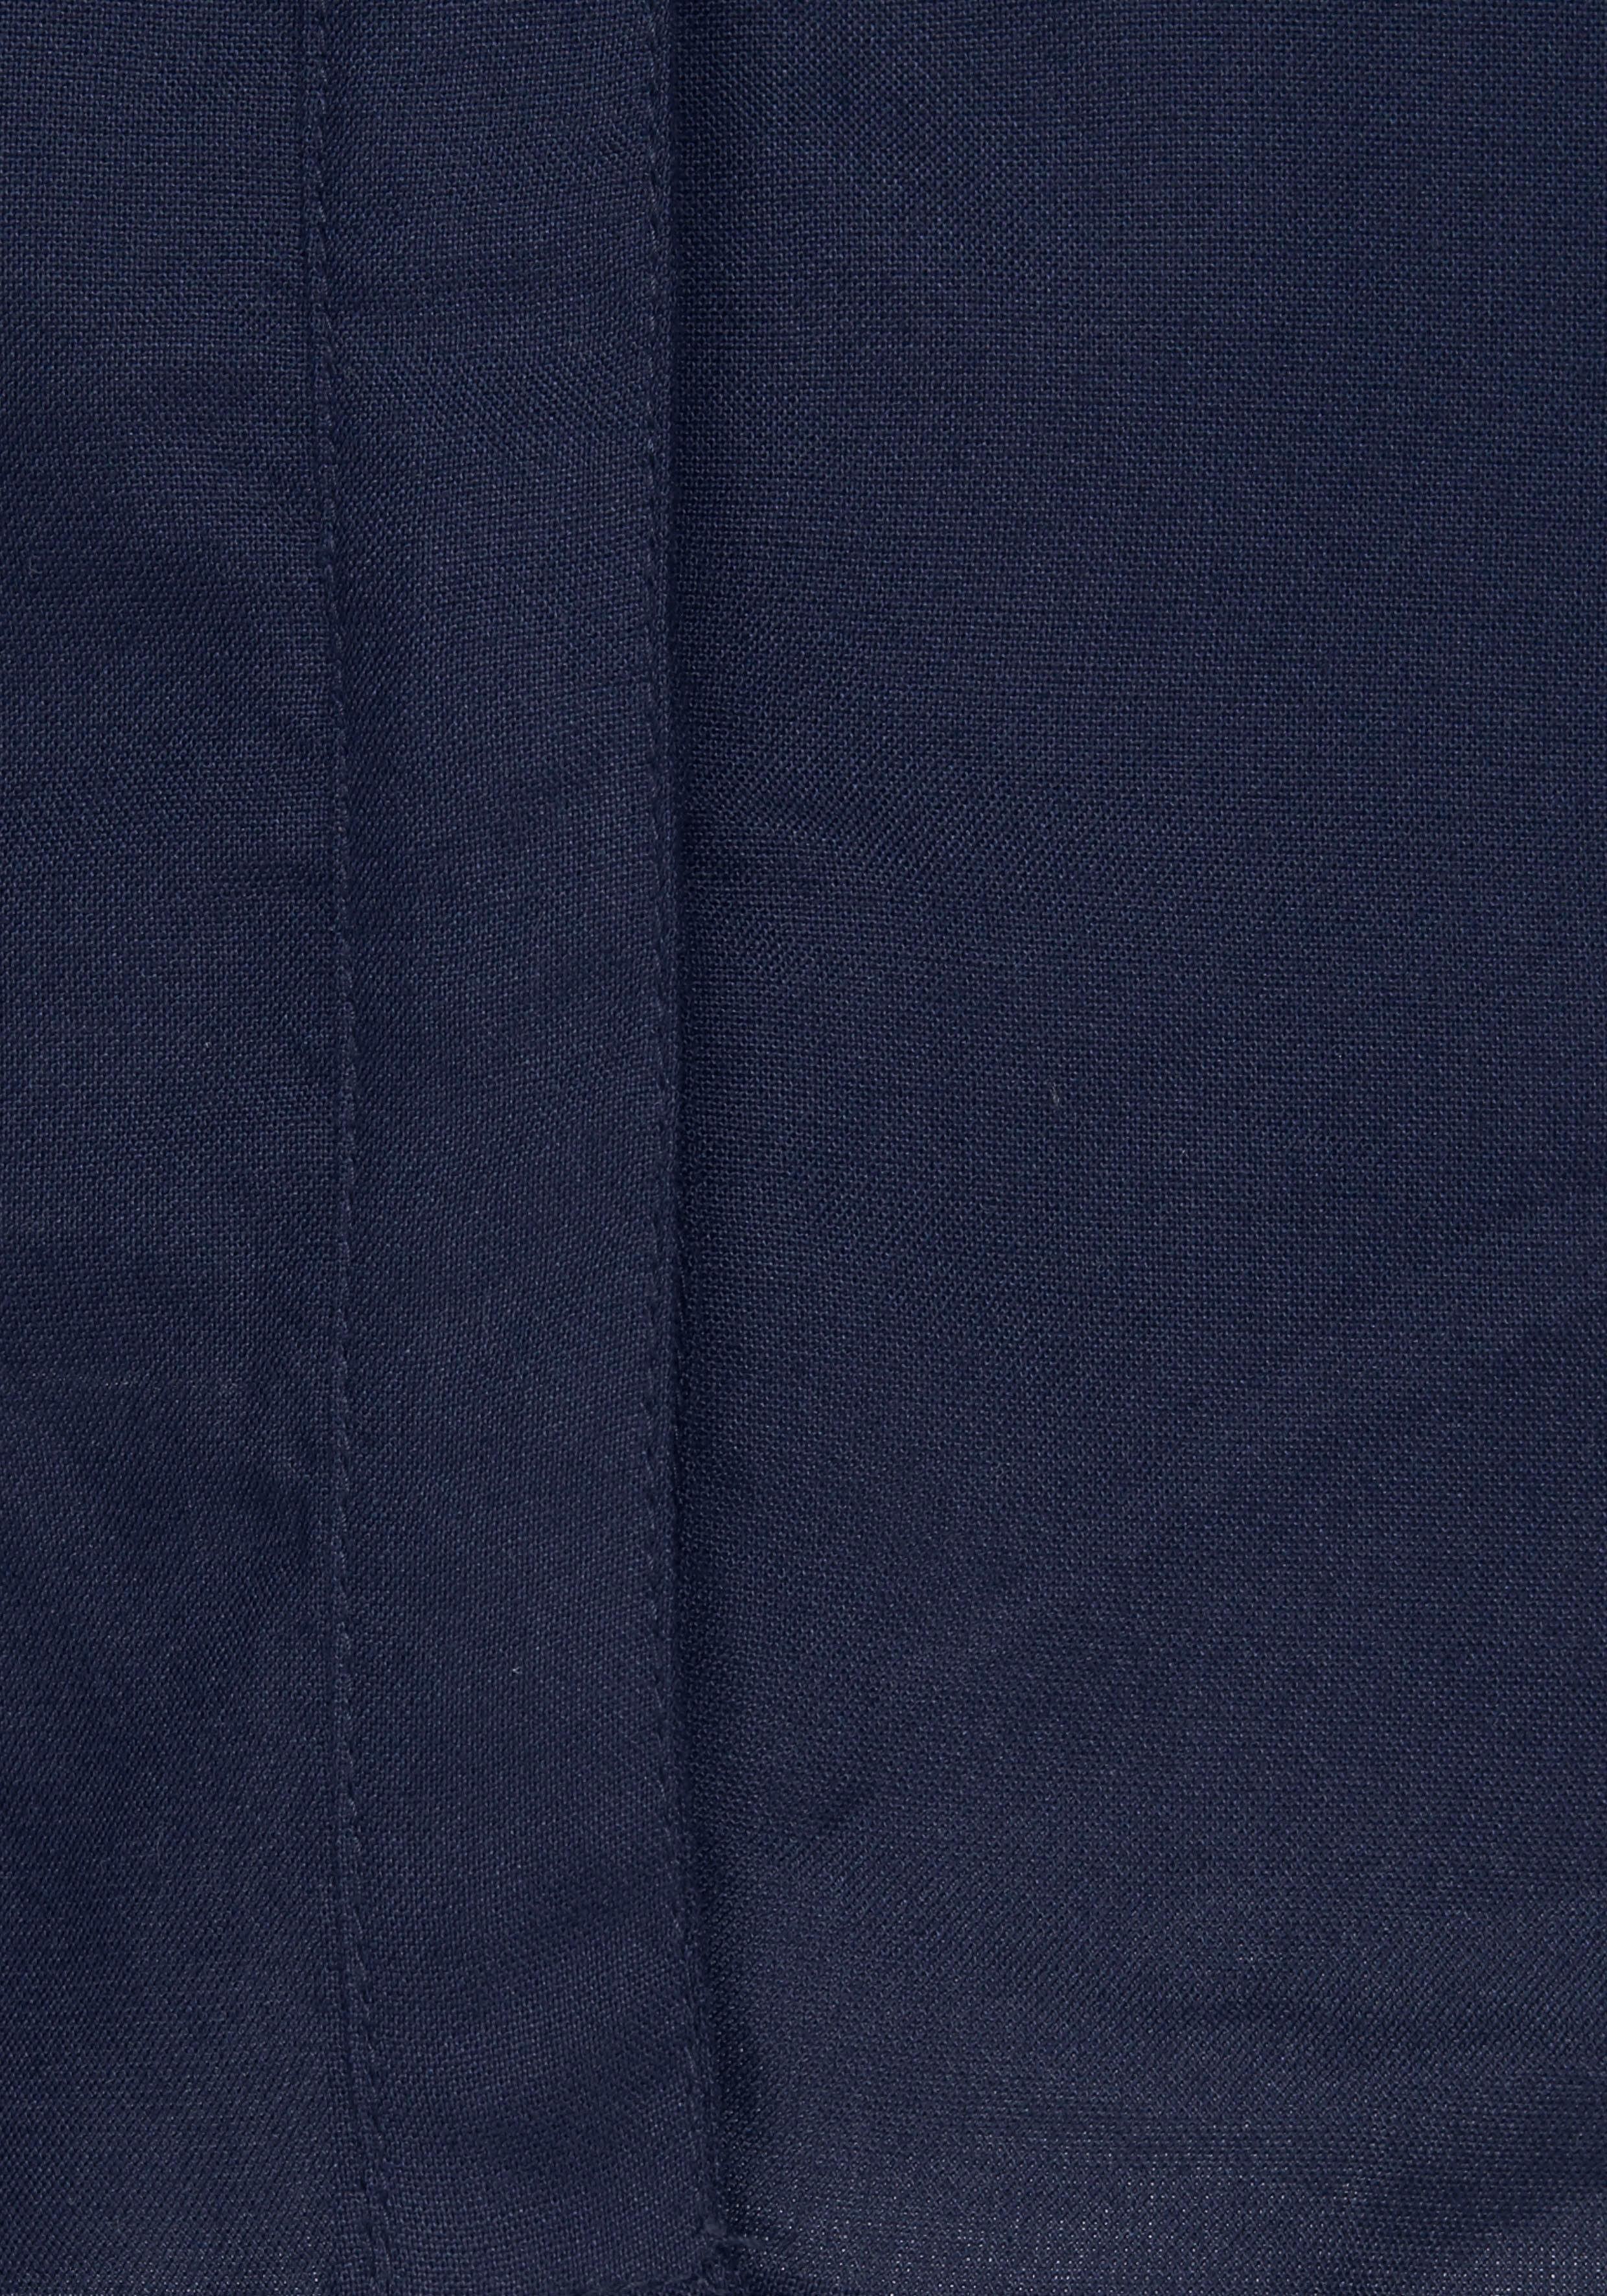 Hemdbluse aus aus AJC Viskose nachhaltigem weich fließender (Bluse marine Material)